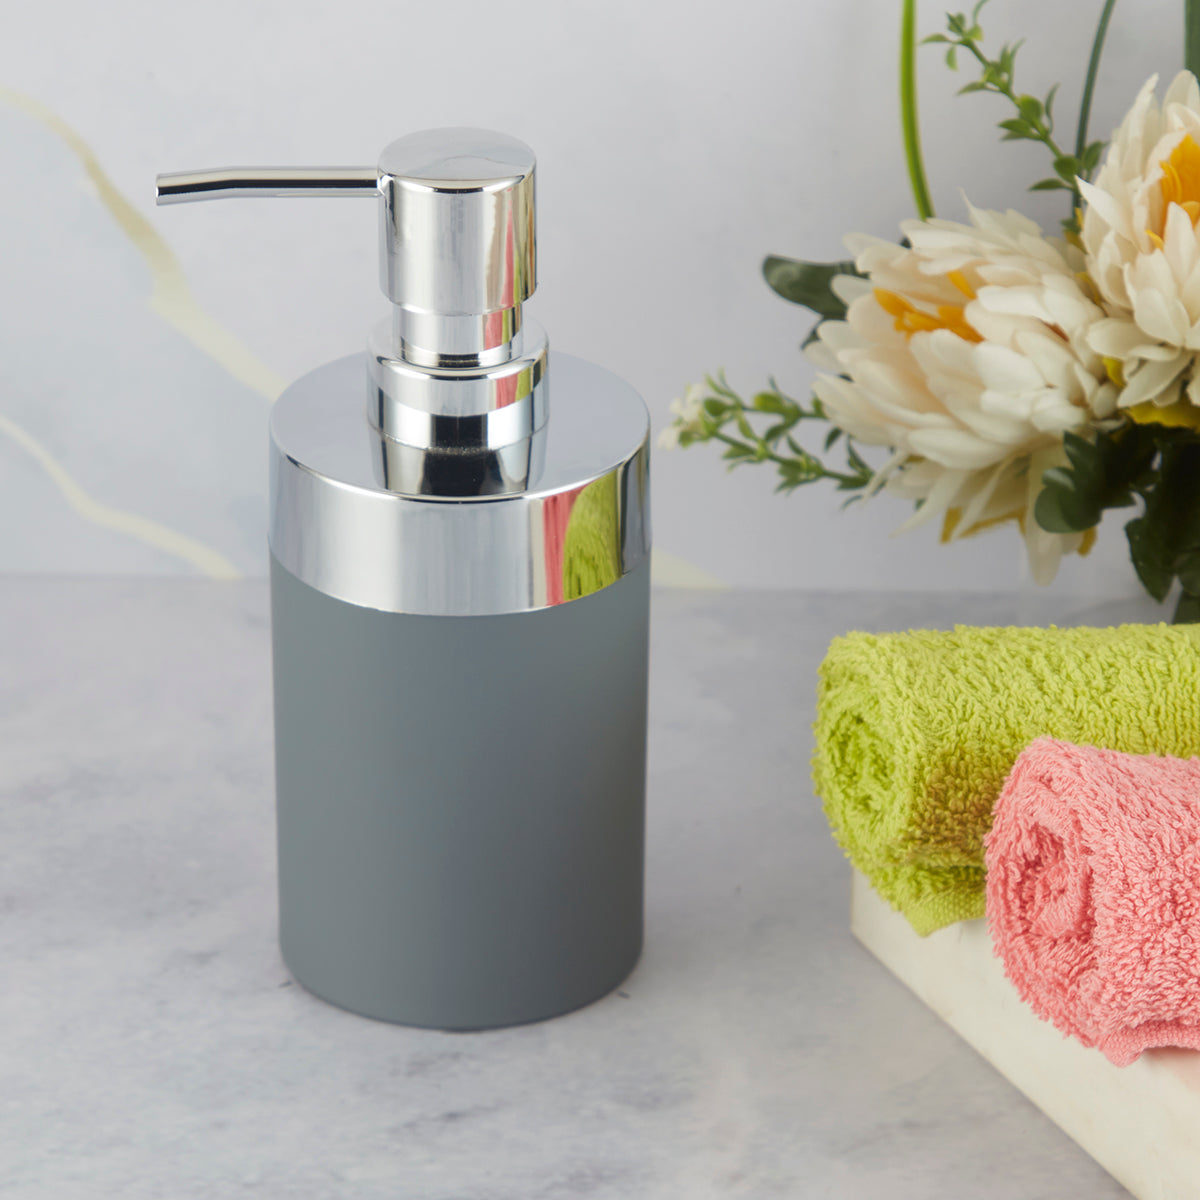 Acrylic Soap Dispenser Pump for Bathroom for Bath Gel, Lotion, Shampoo (9956)